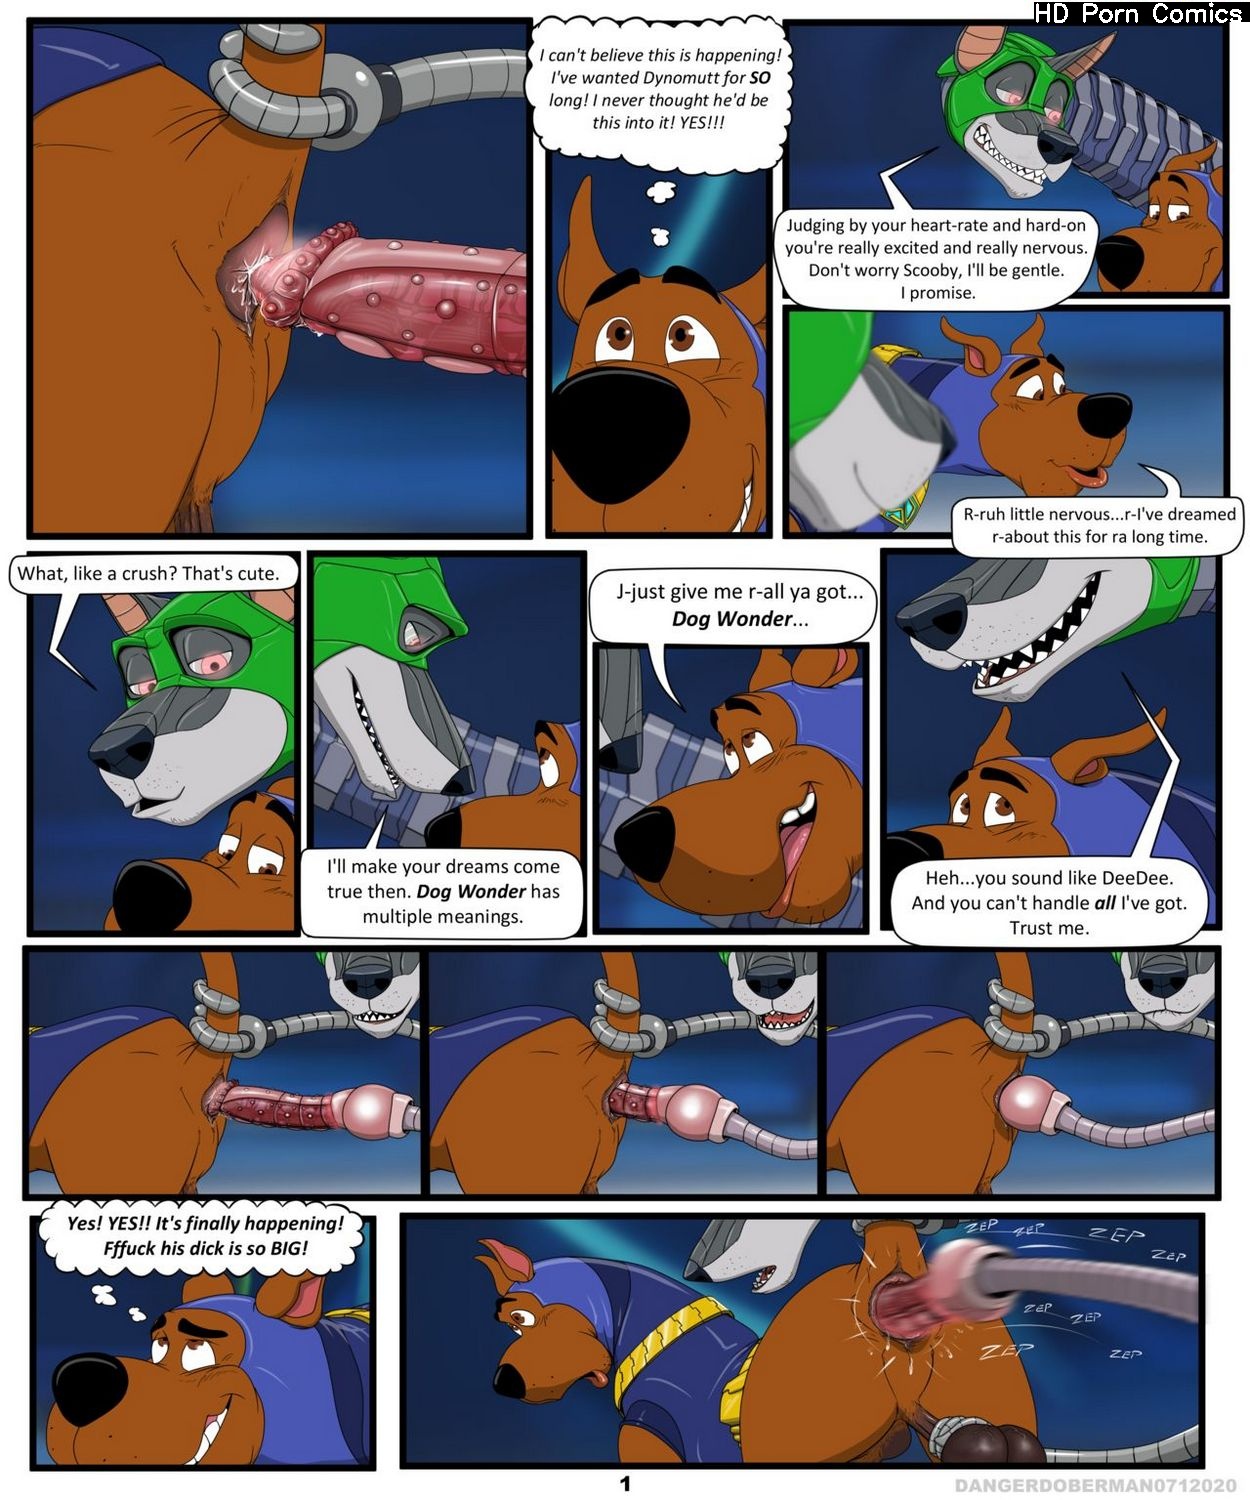 Scooby's Dreams Come True comic porn â€“ HD Porn Comics